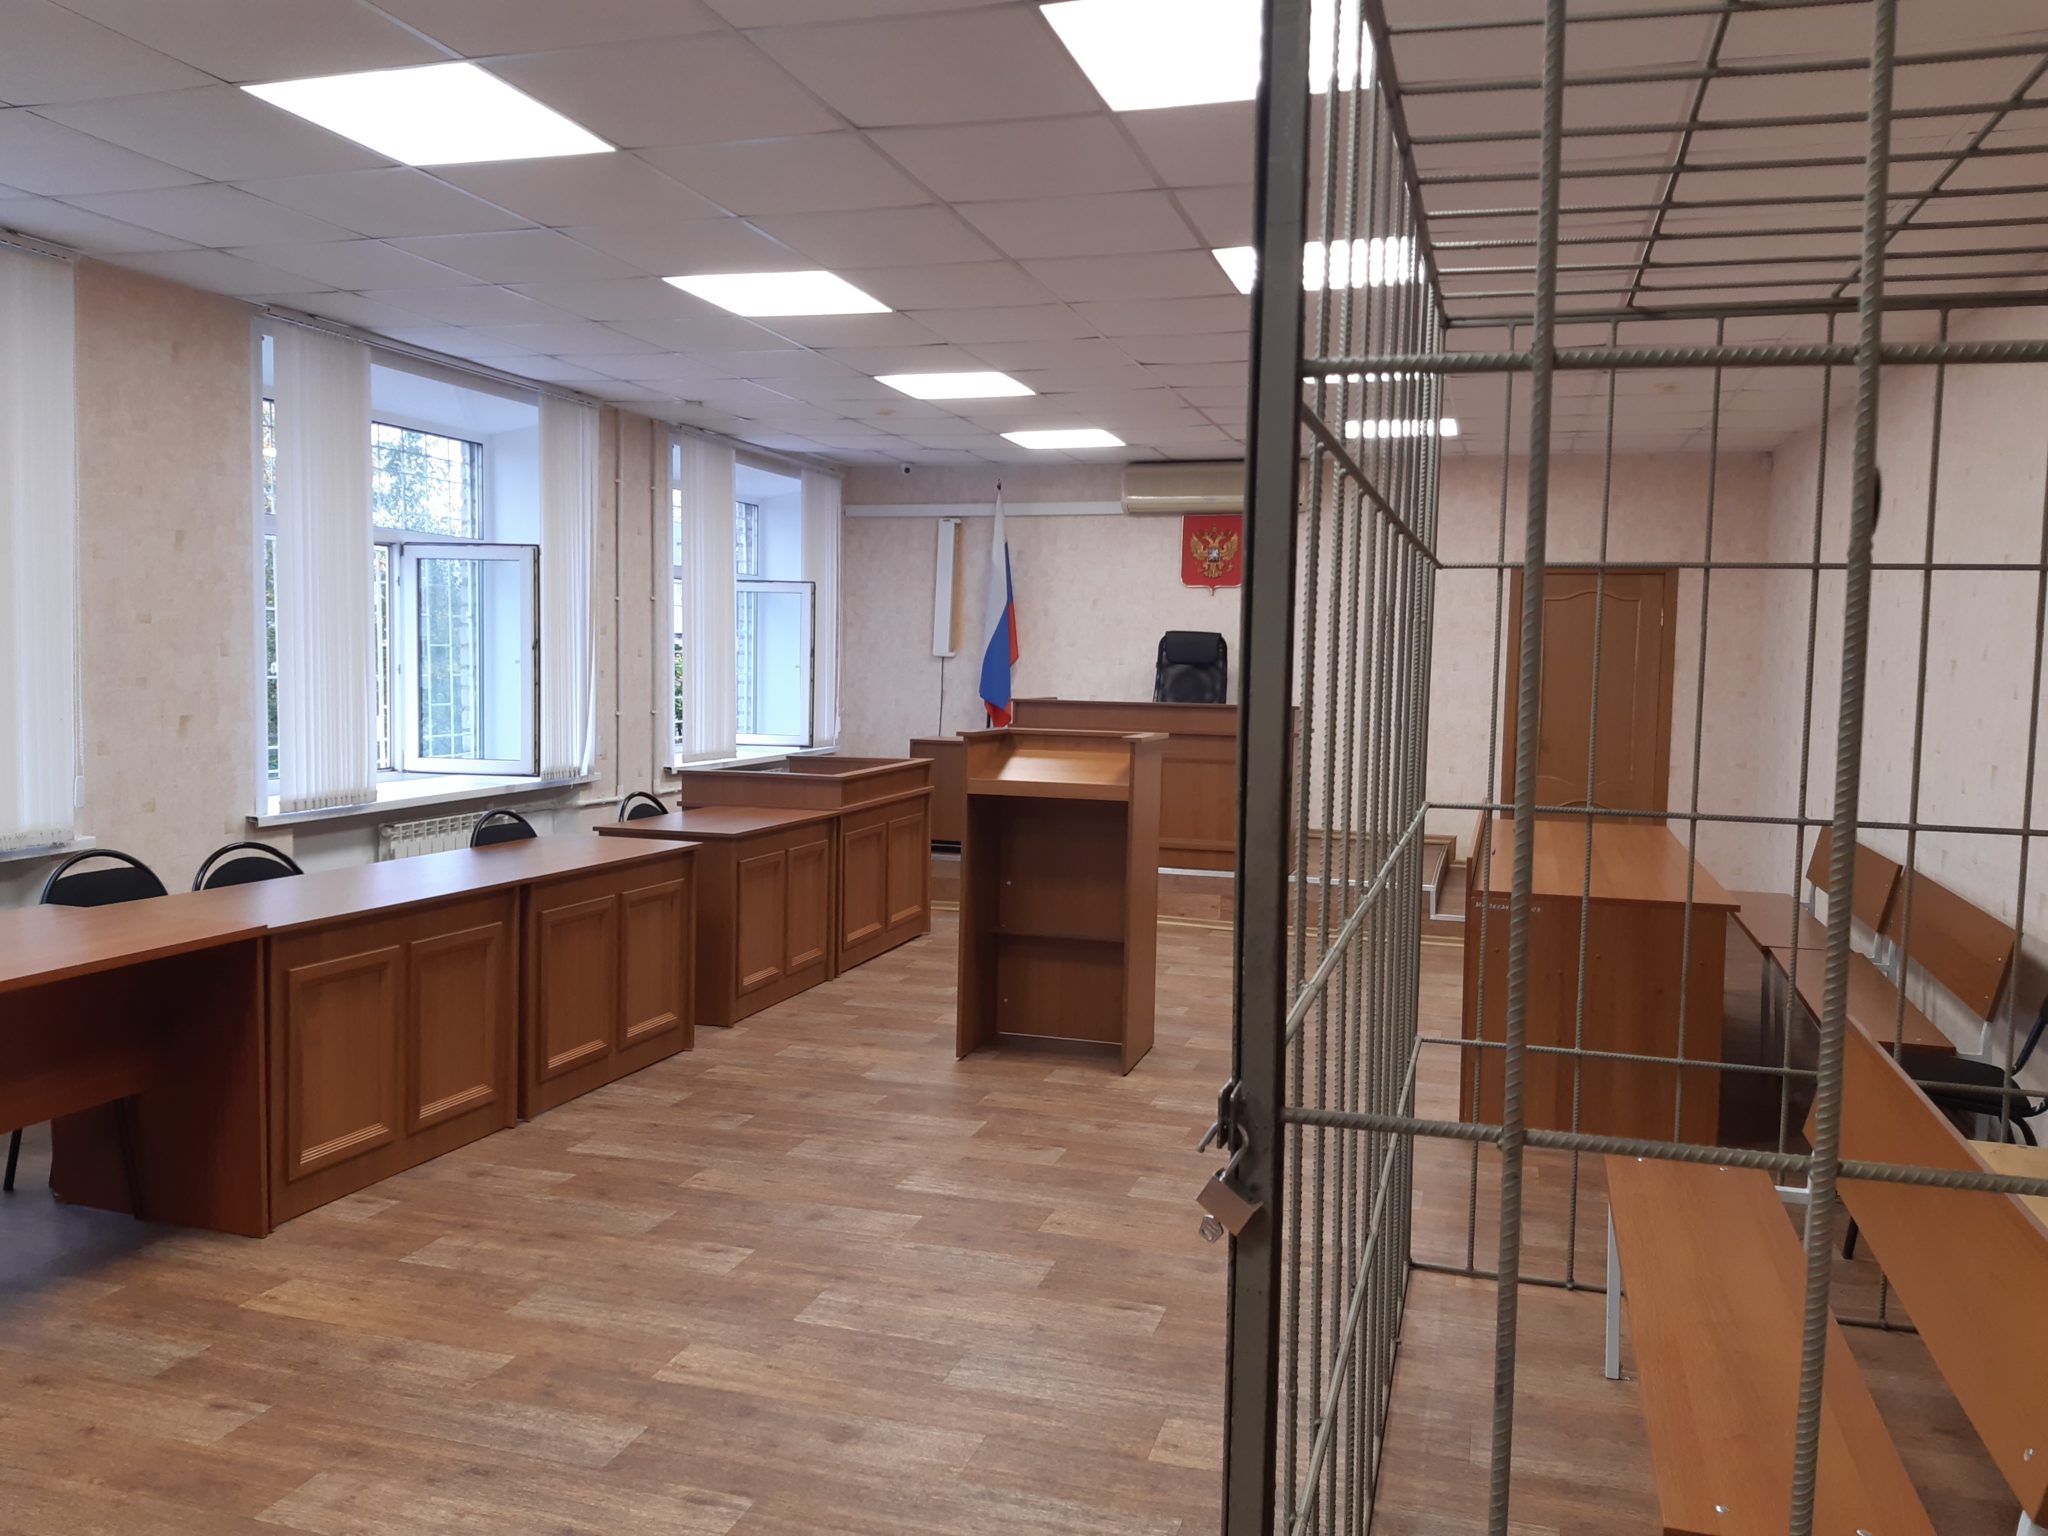 Кострома сайт димитровского суда